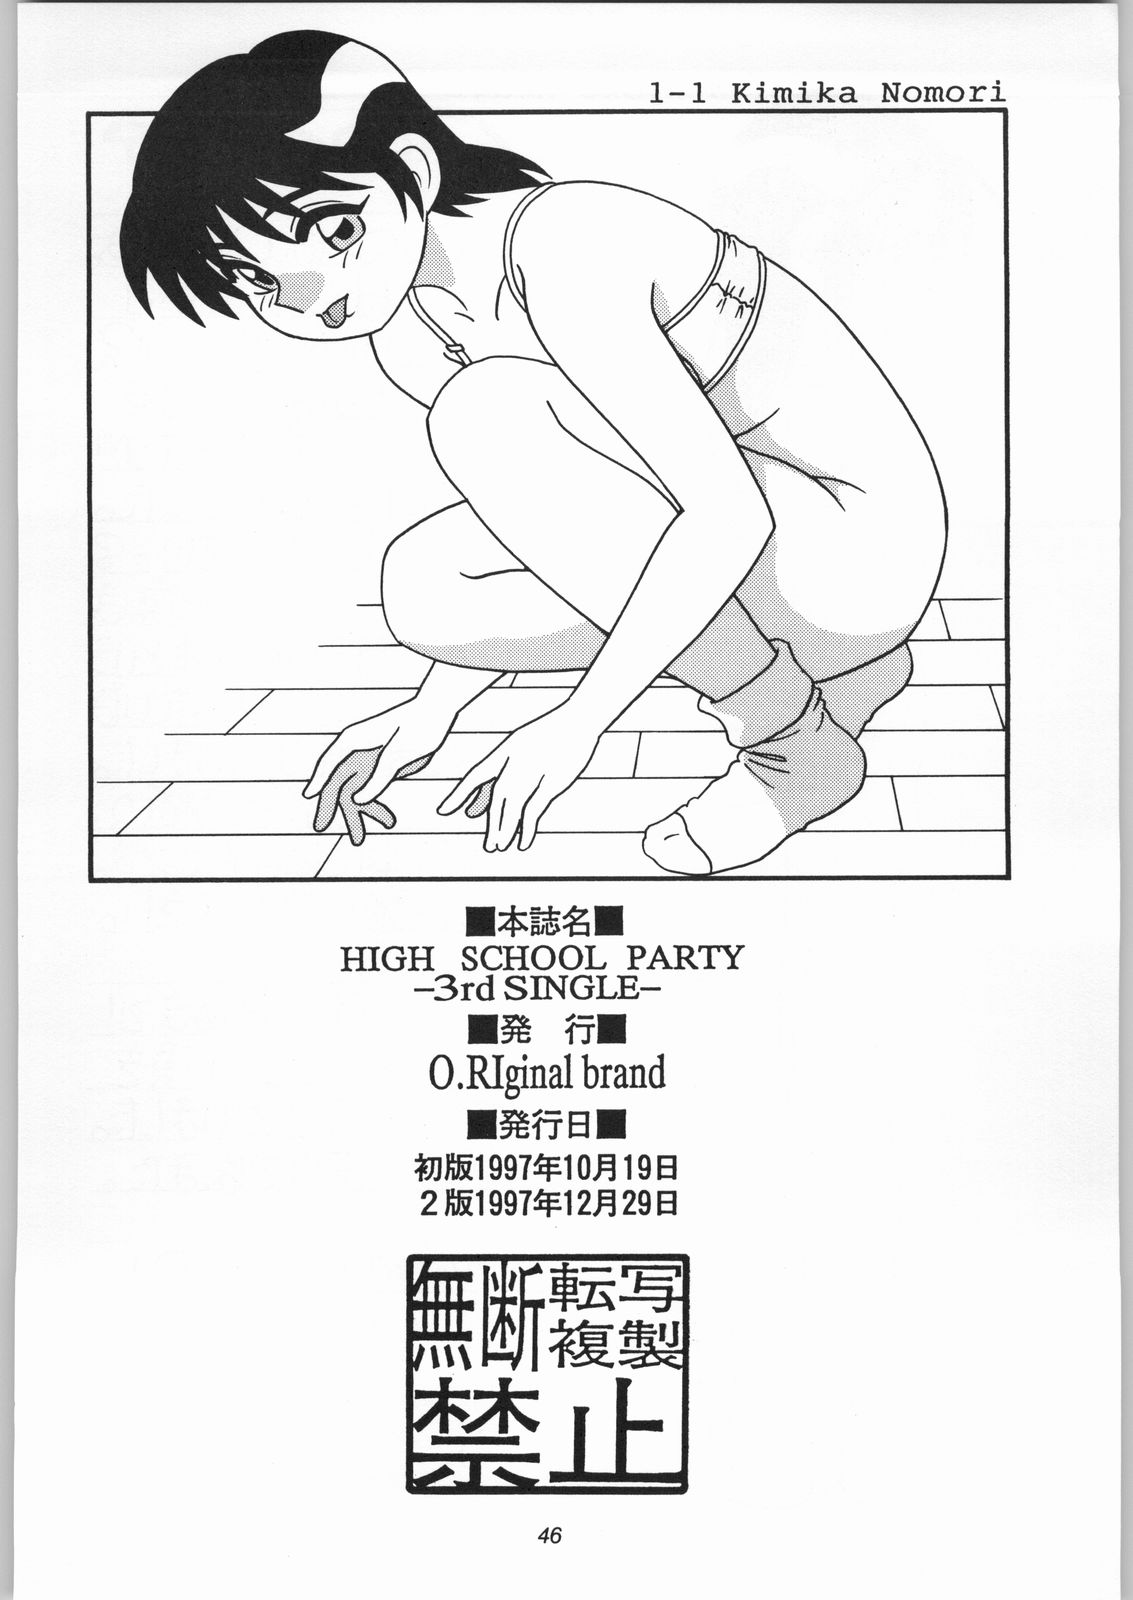 【O.Riginalブランド】HIGHSCHOOL PARTY 3rd Single